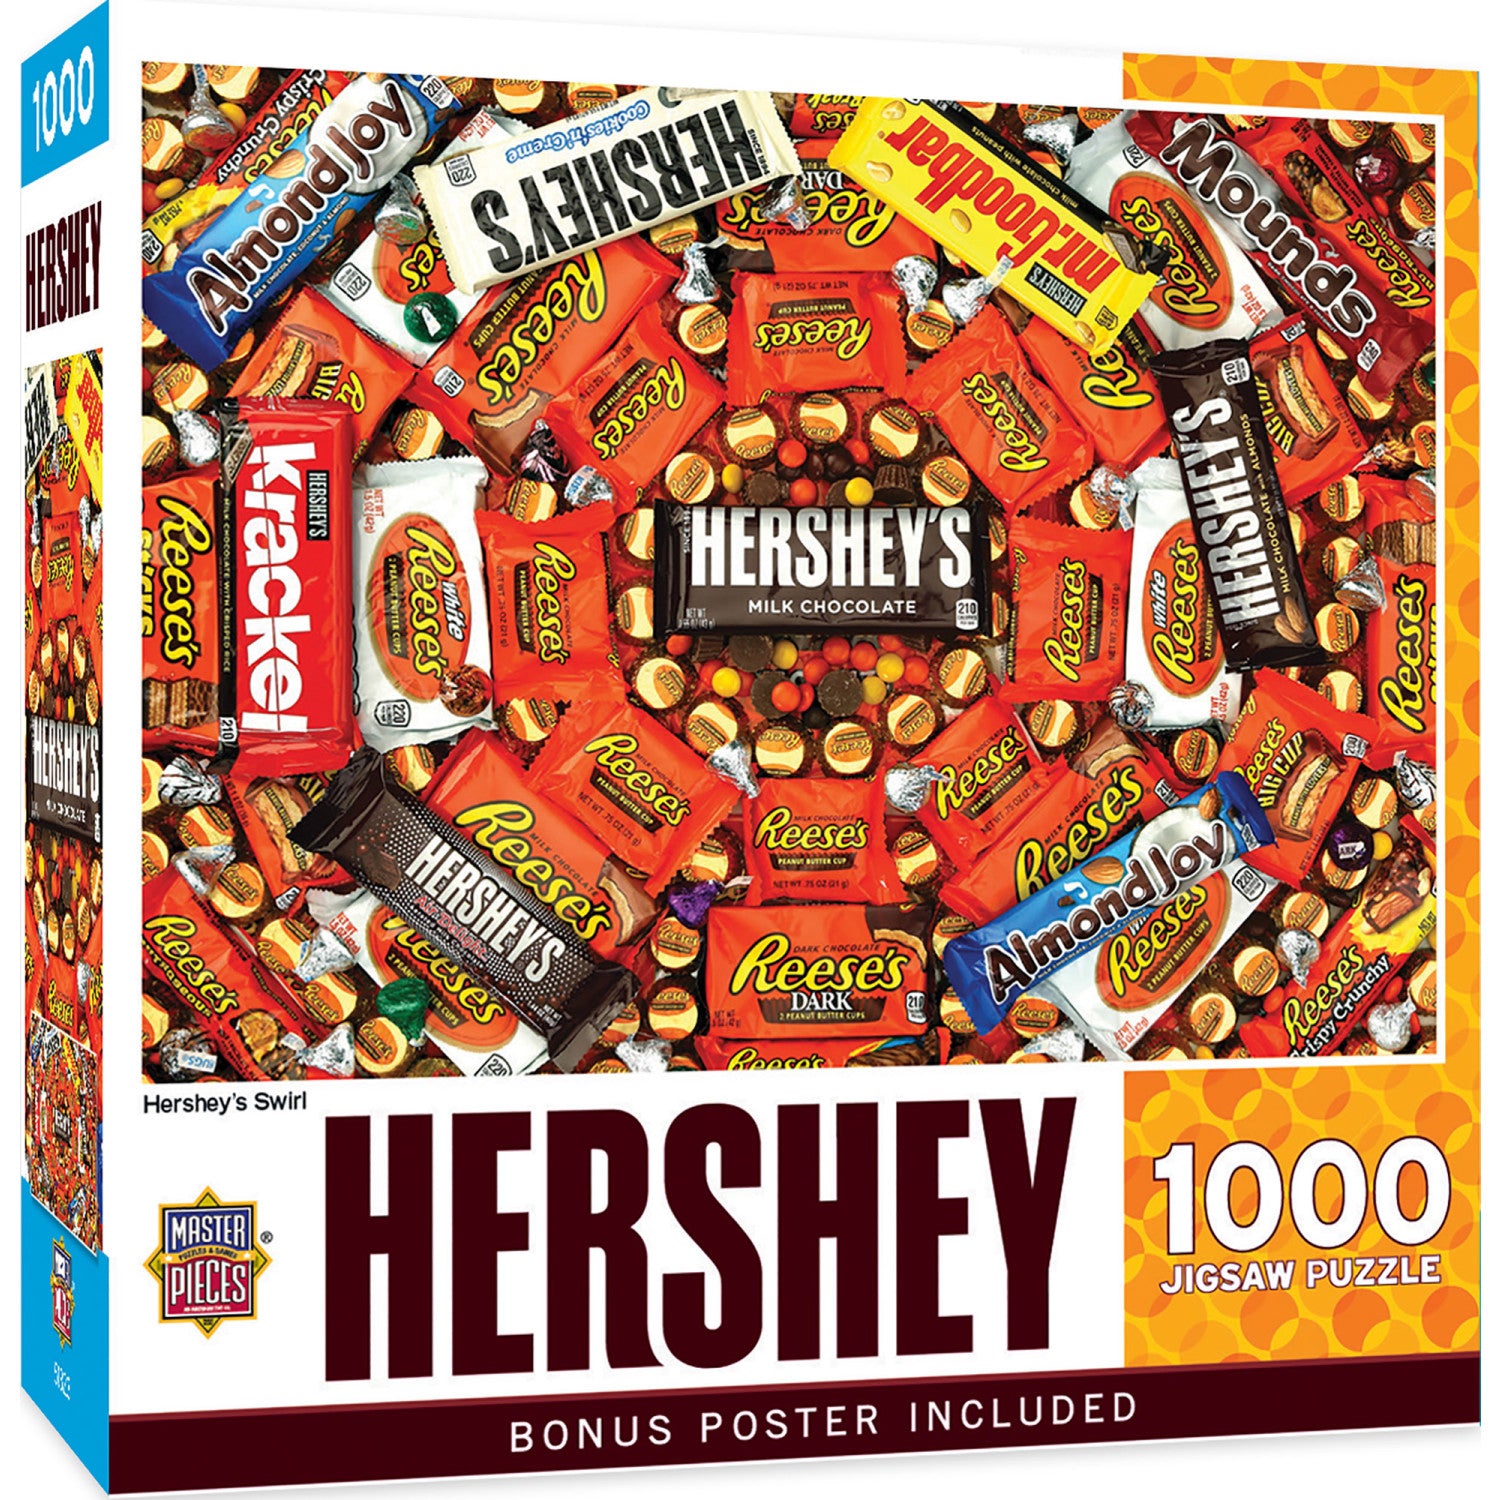 Hershey's Swirl - 1000 Piece Jigsaw Puzzle